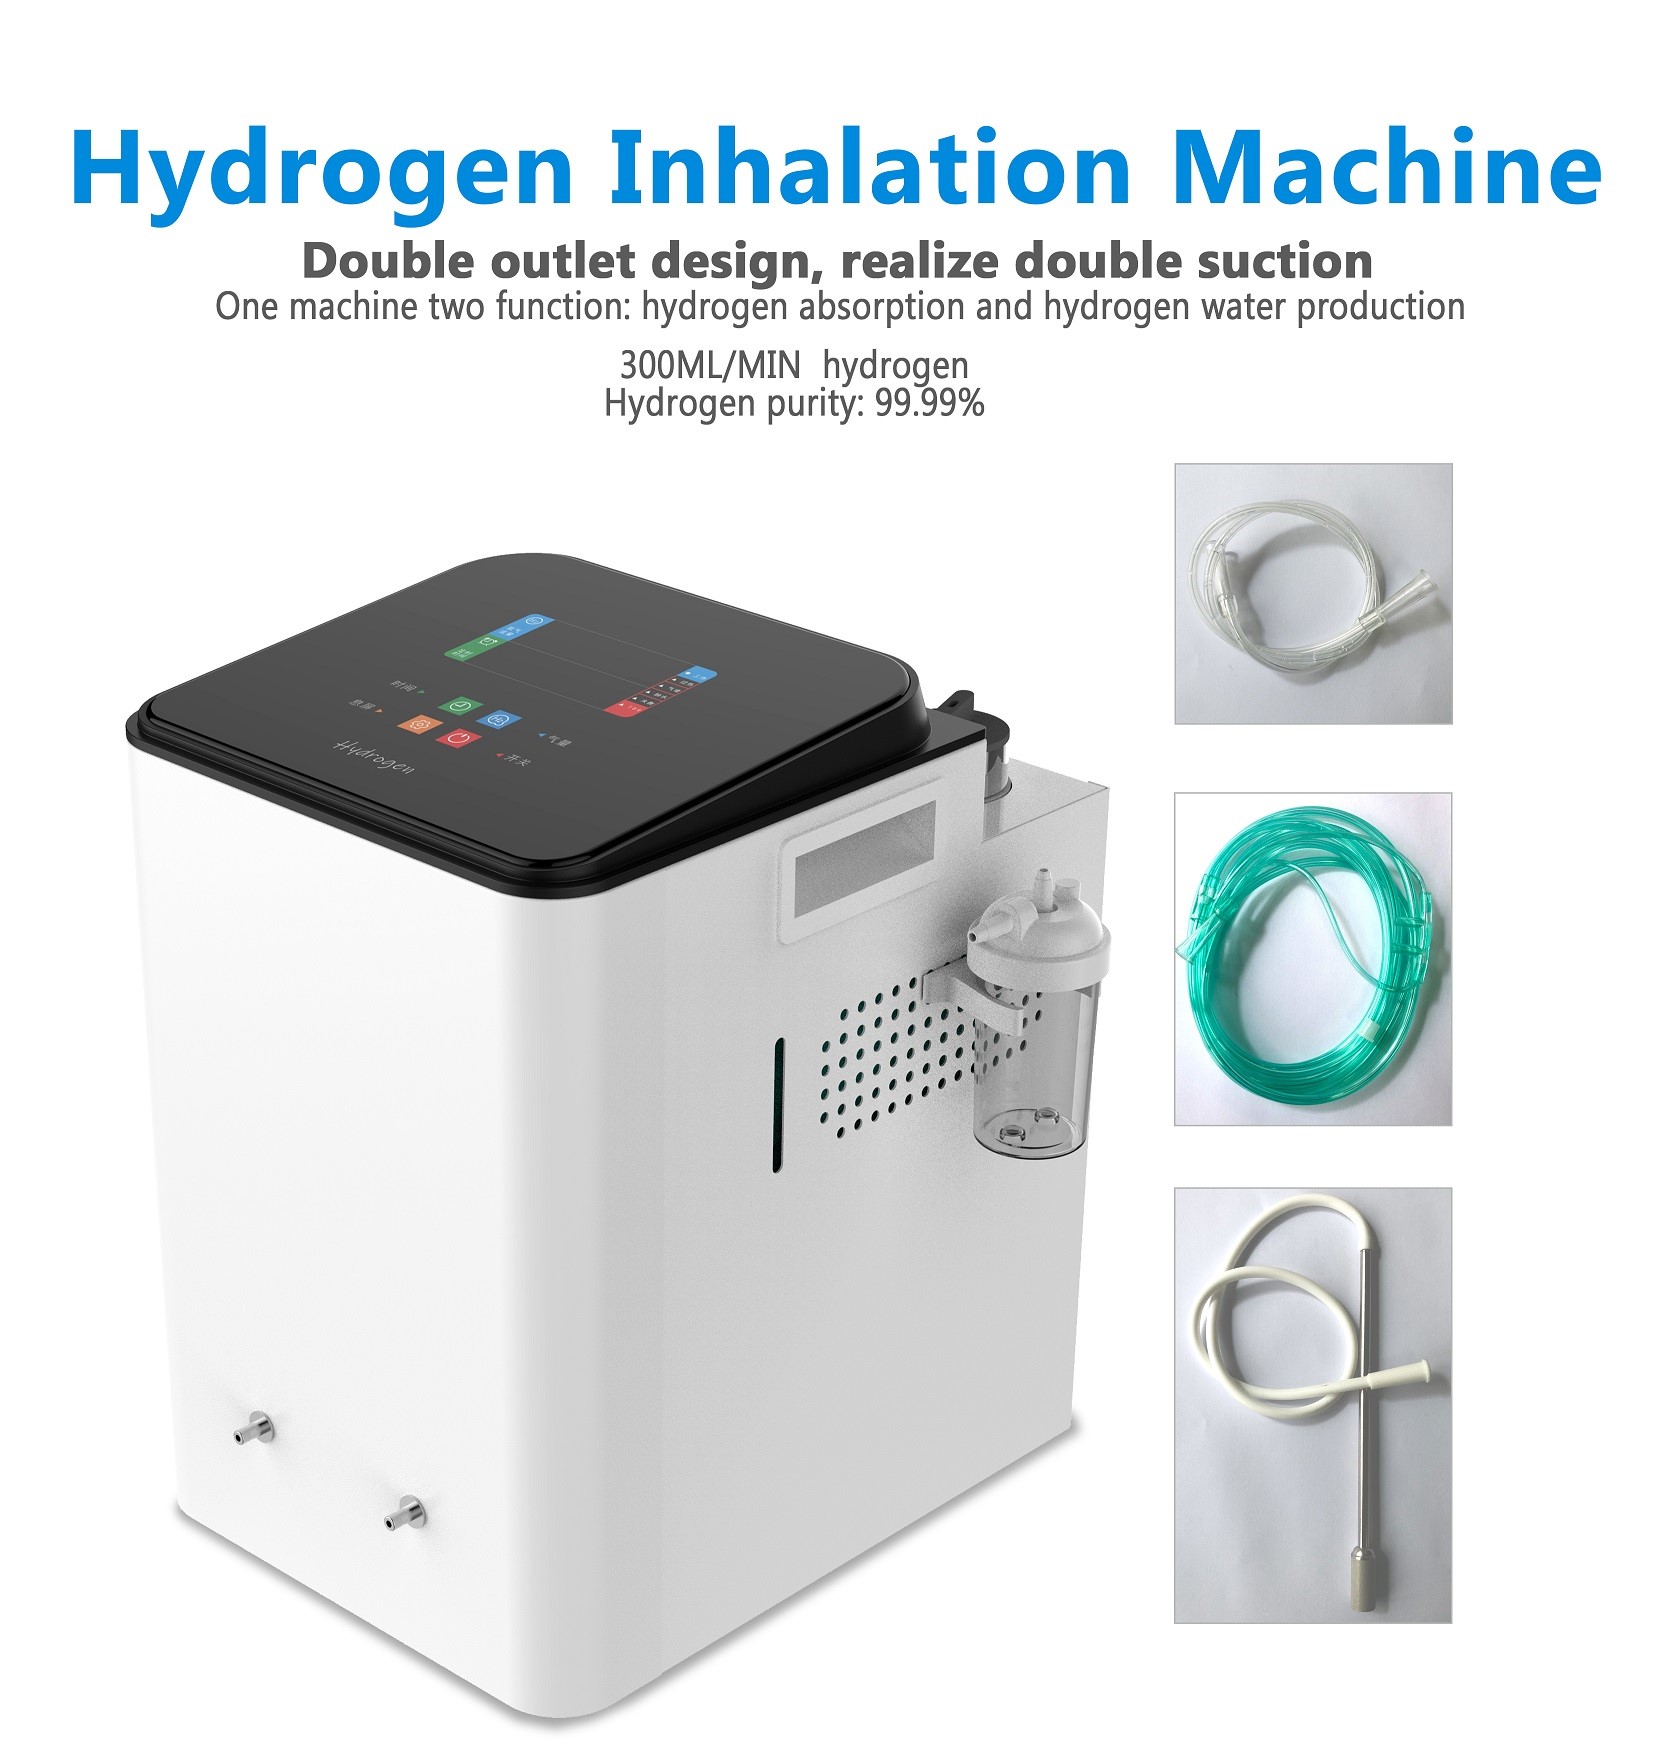 Guide de l'installation et de l'utilisation d'une machine d'inhalation d'hydrogène